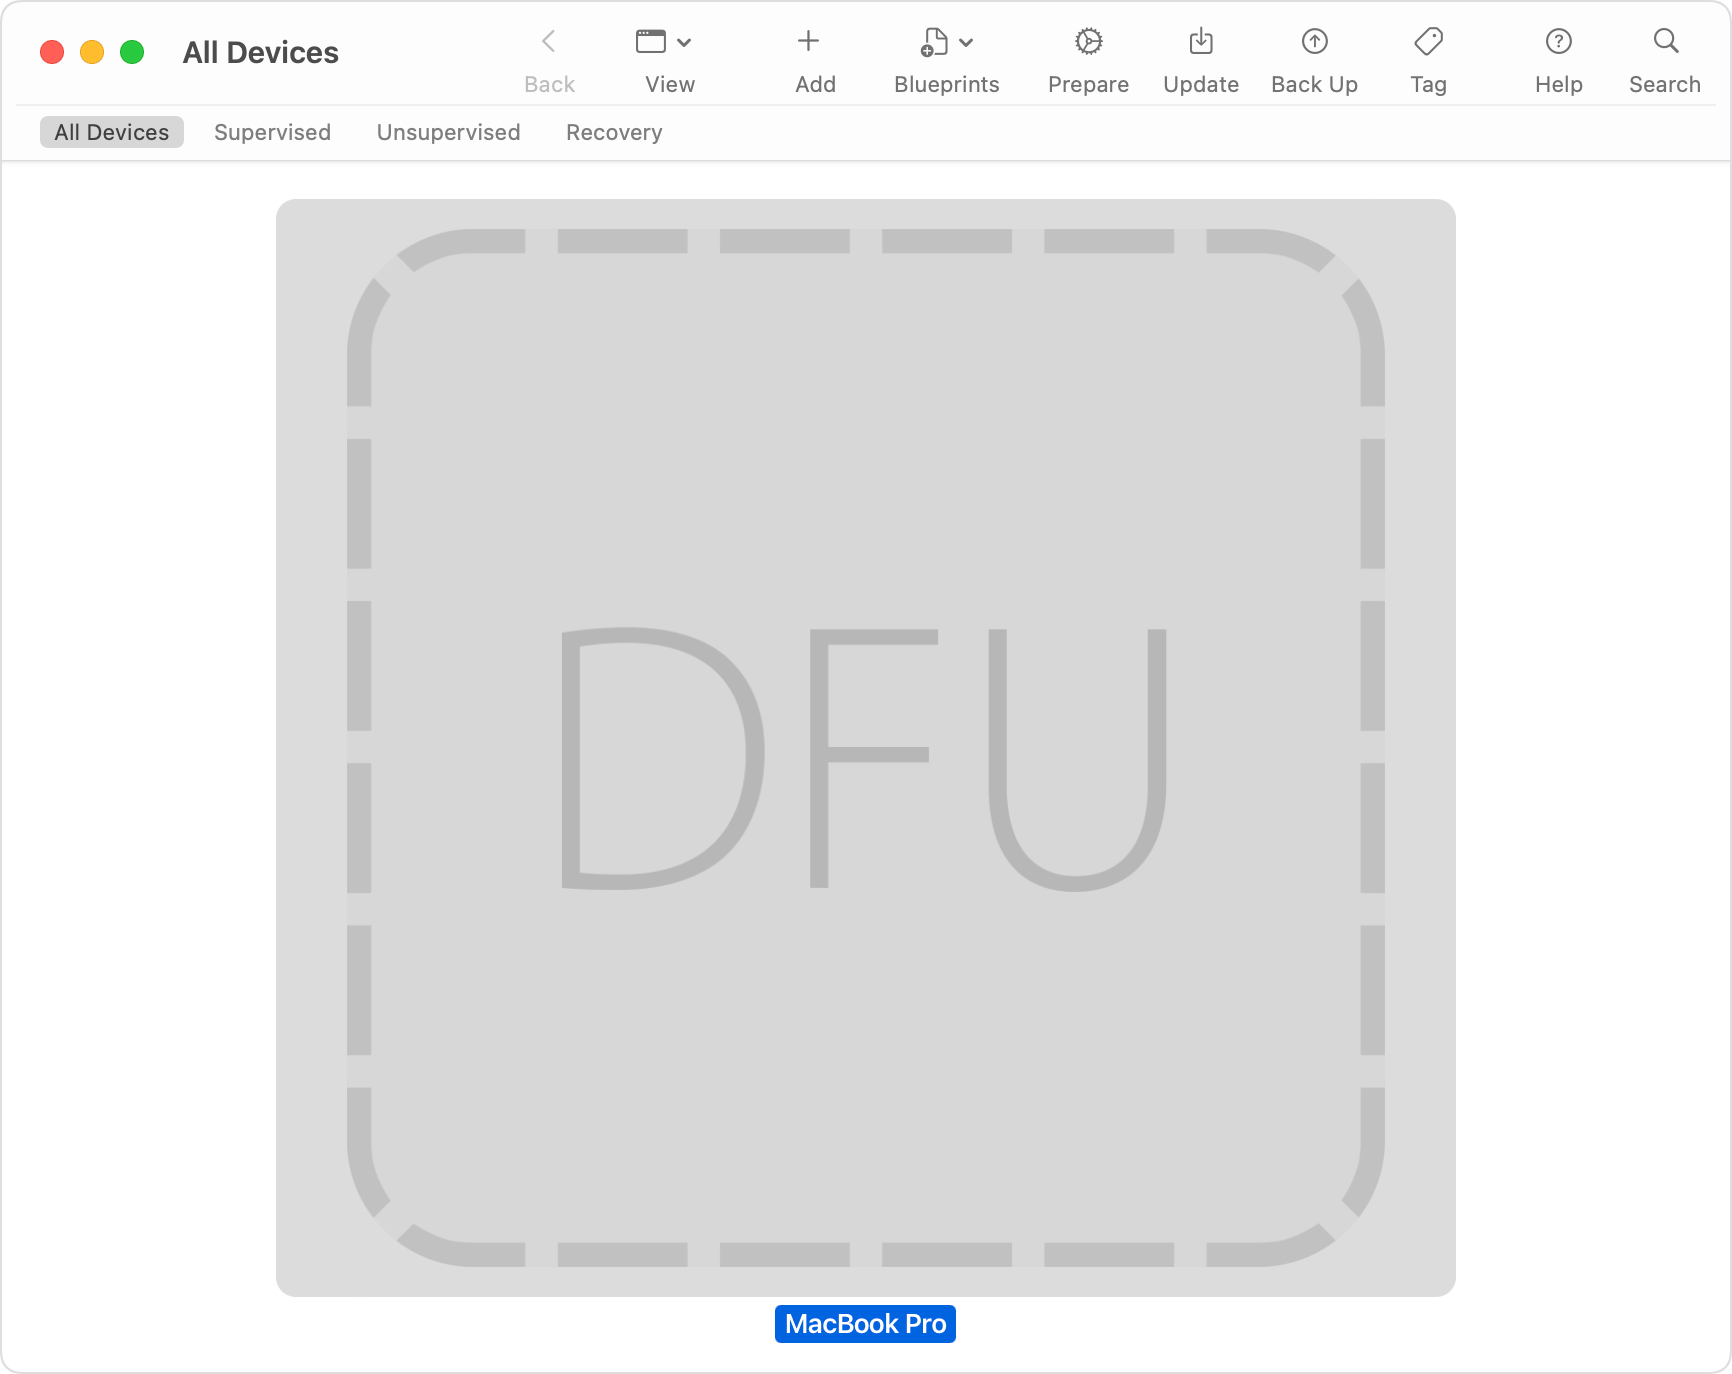 Jendela Apple Configurator menampilkan "DFU" yang dipilih untuk Mac yang terdampak